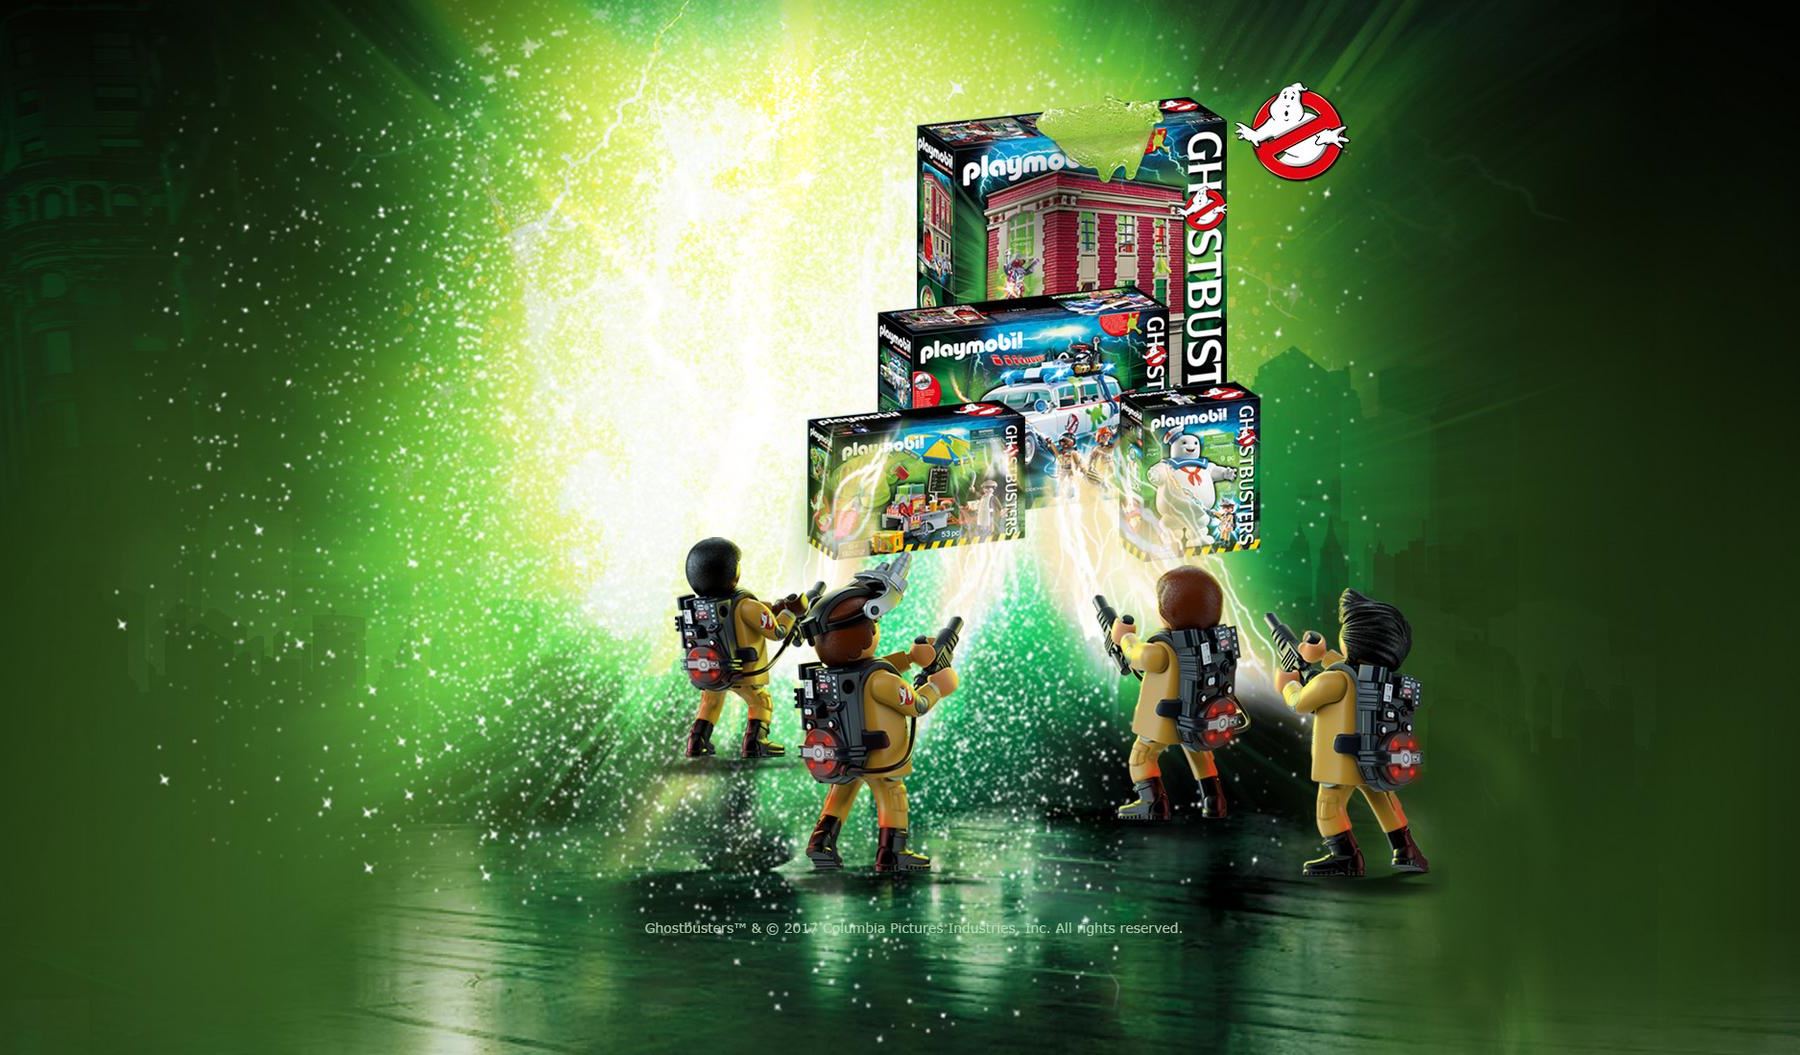 La Gamme SOS Fant´mes Playmobil 2 Les Bandes Annonces 3 Ghostbusters France et Playmobil France 4 Les Produits Playmobil